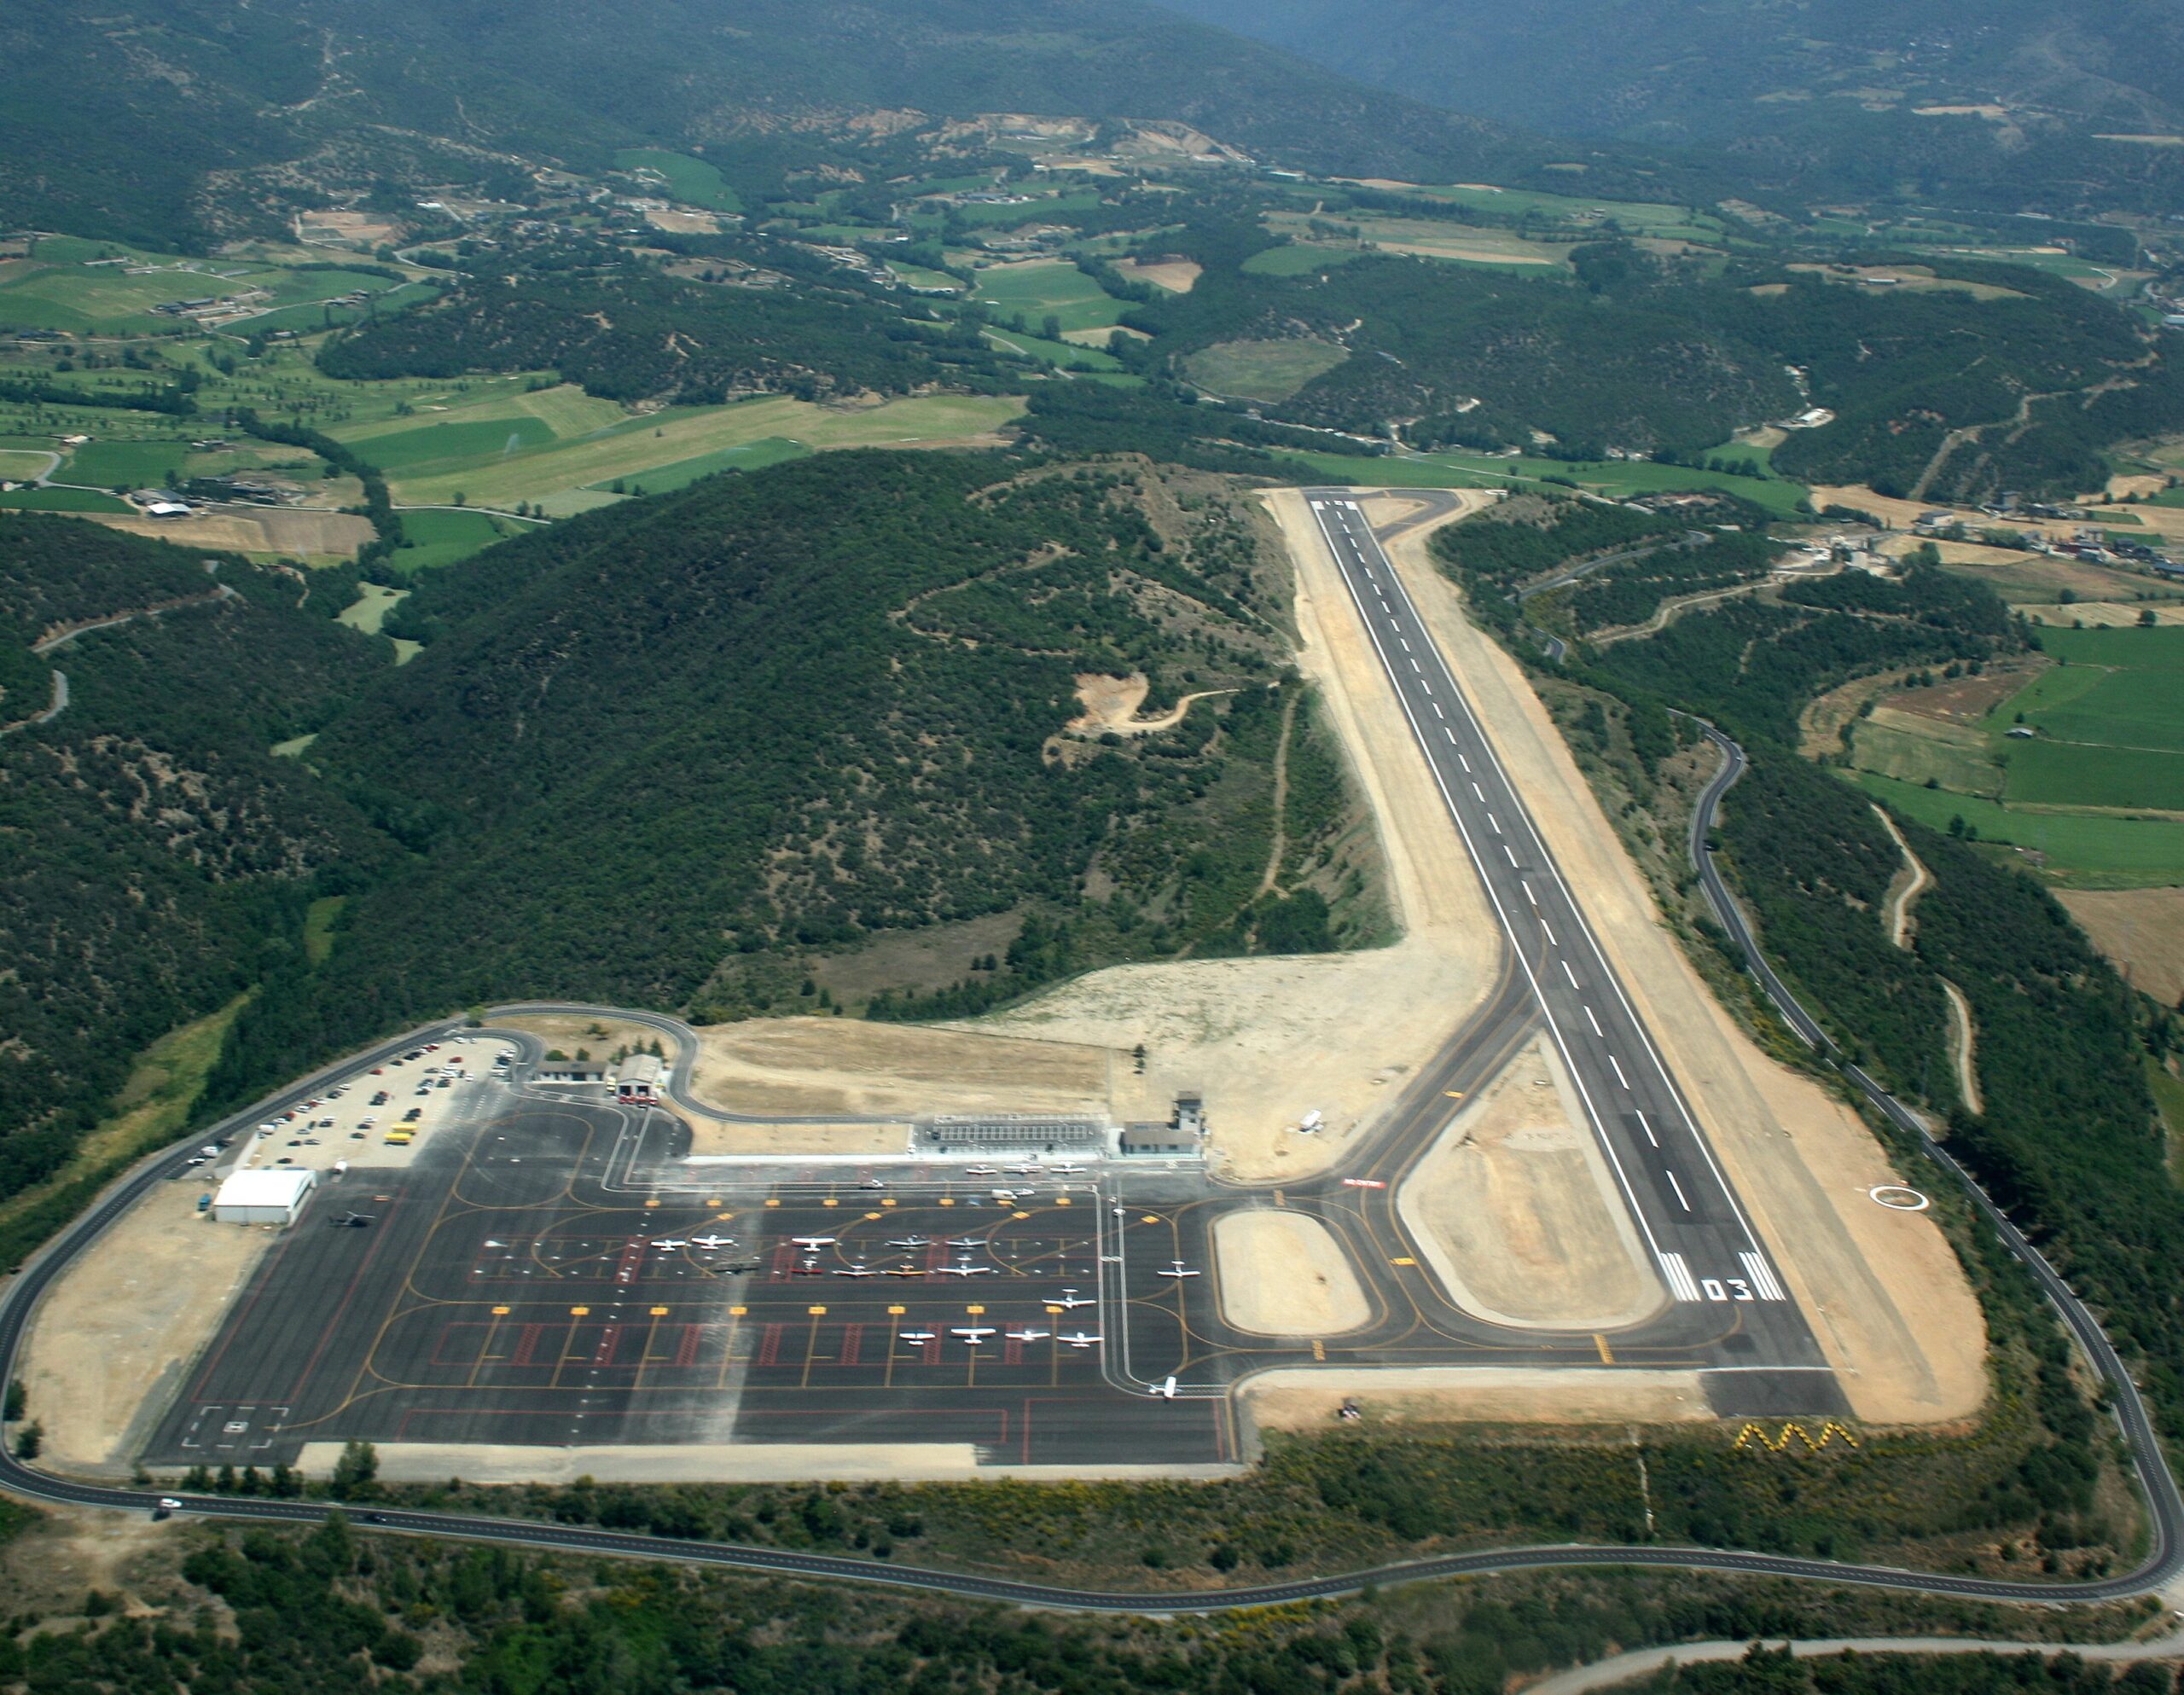 El aeropuerto de la Seu d'Urgell